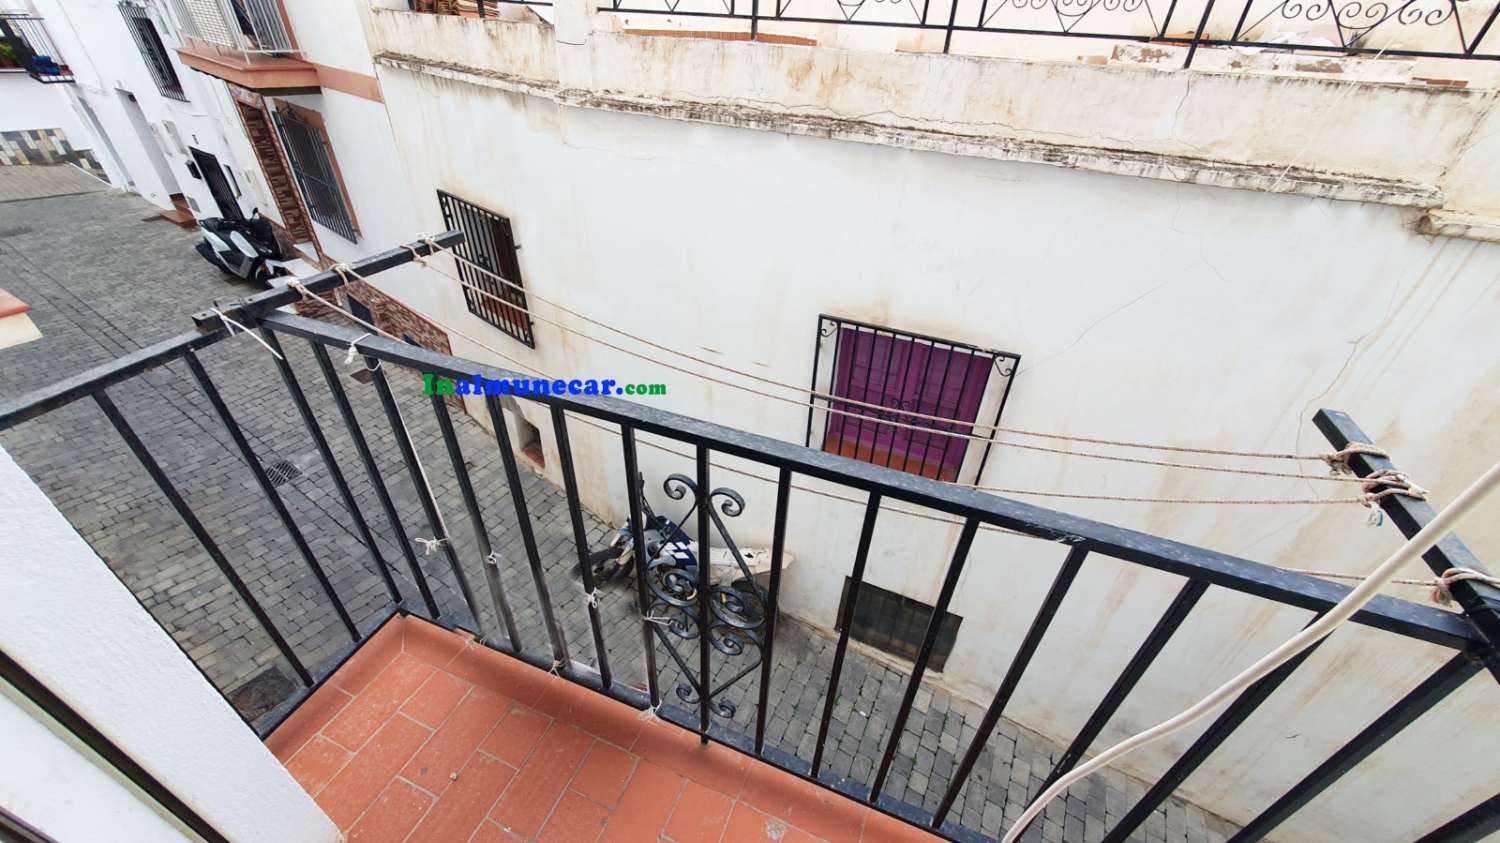 Apartamento en venta en Almuñecar, zona centro.